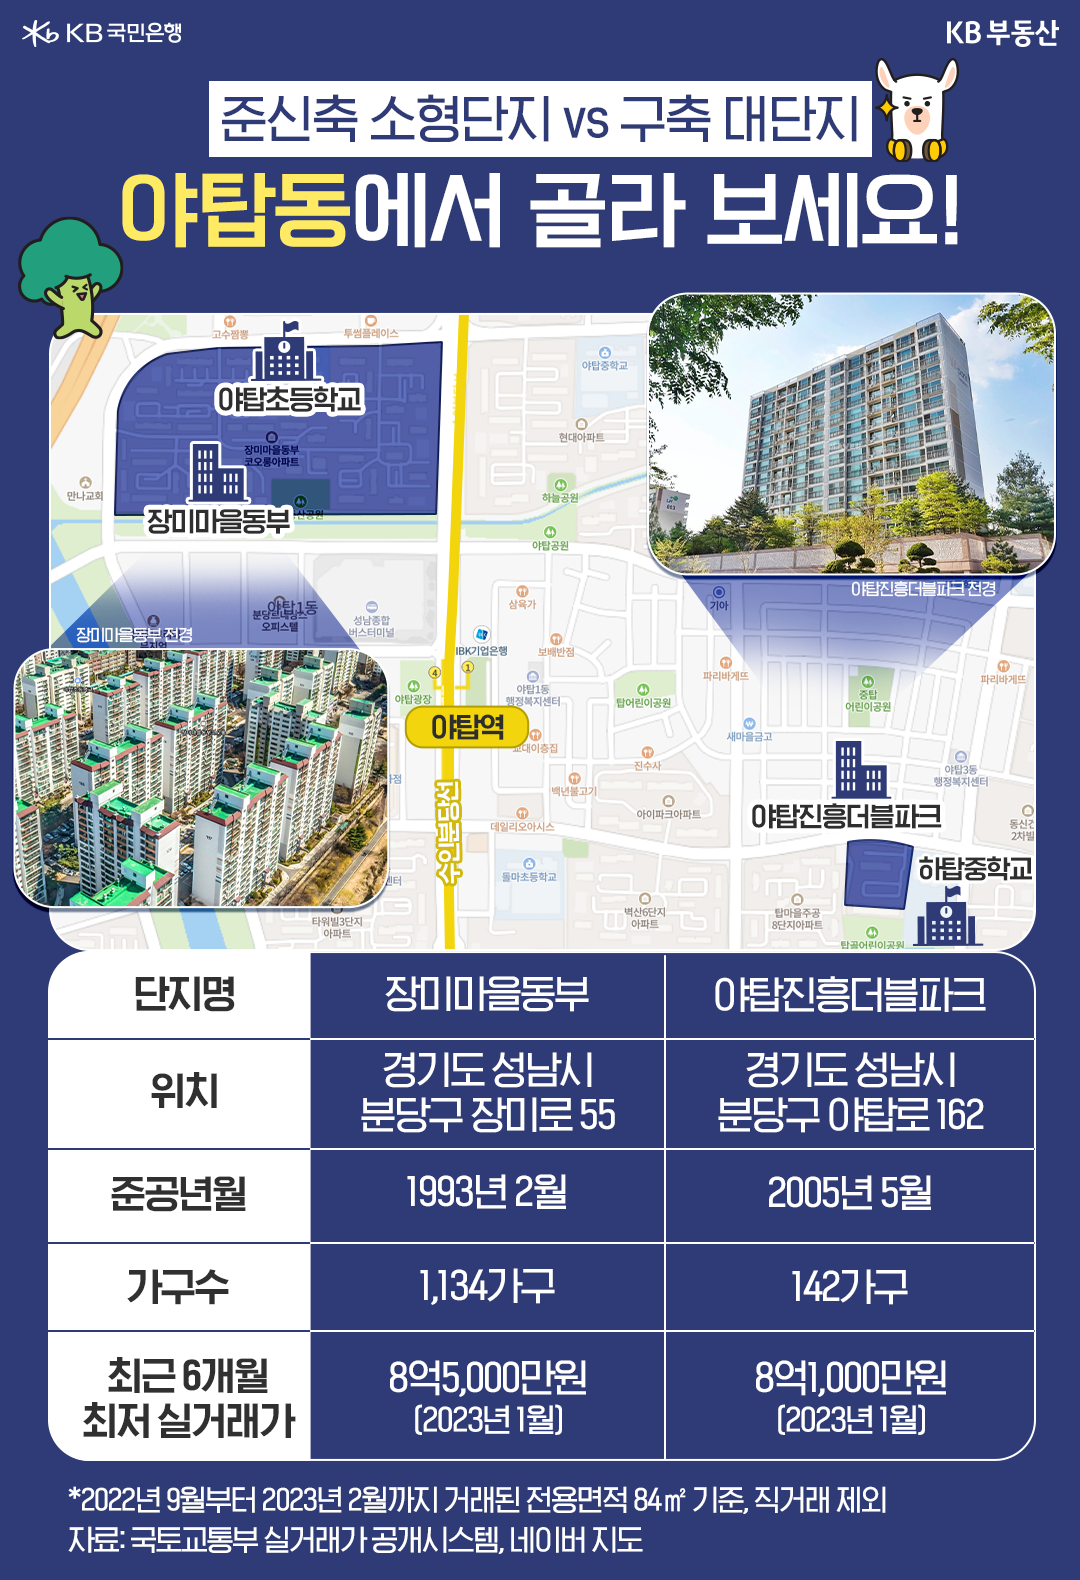 '경기도 성남시 분당에서 저렴하게 거래된 아파트' 는 야탑동에 위치한 '장미마을동부', '야탑진흥더블파크'이다. 